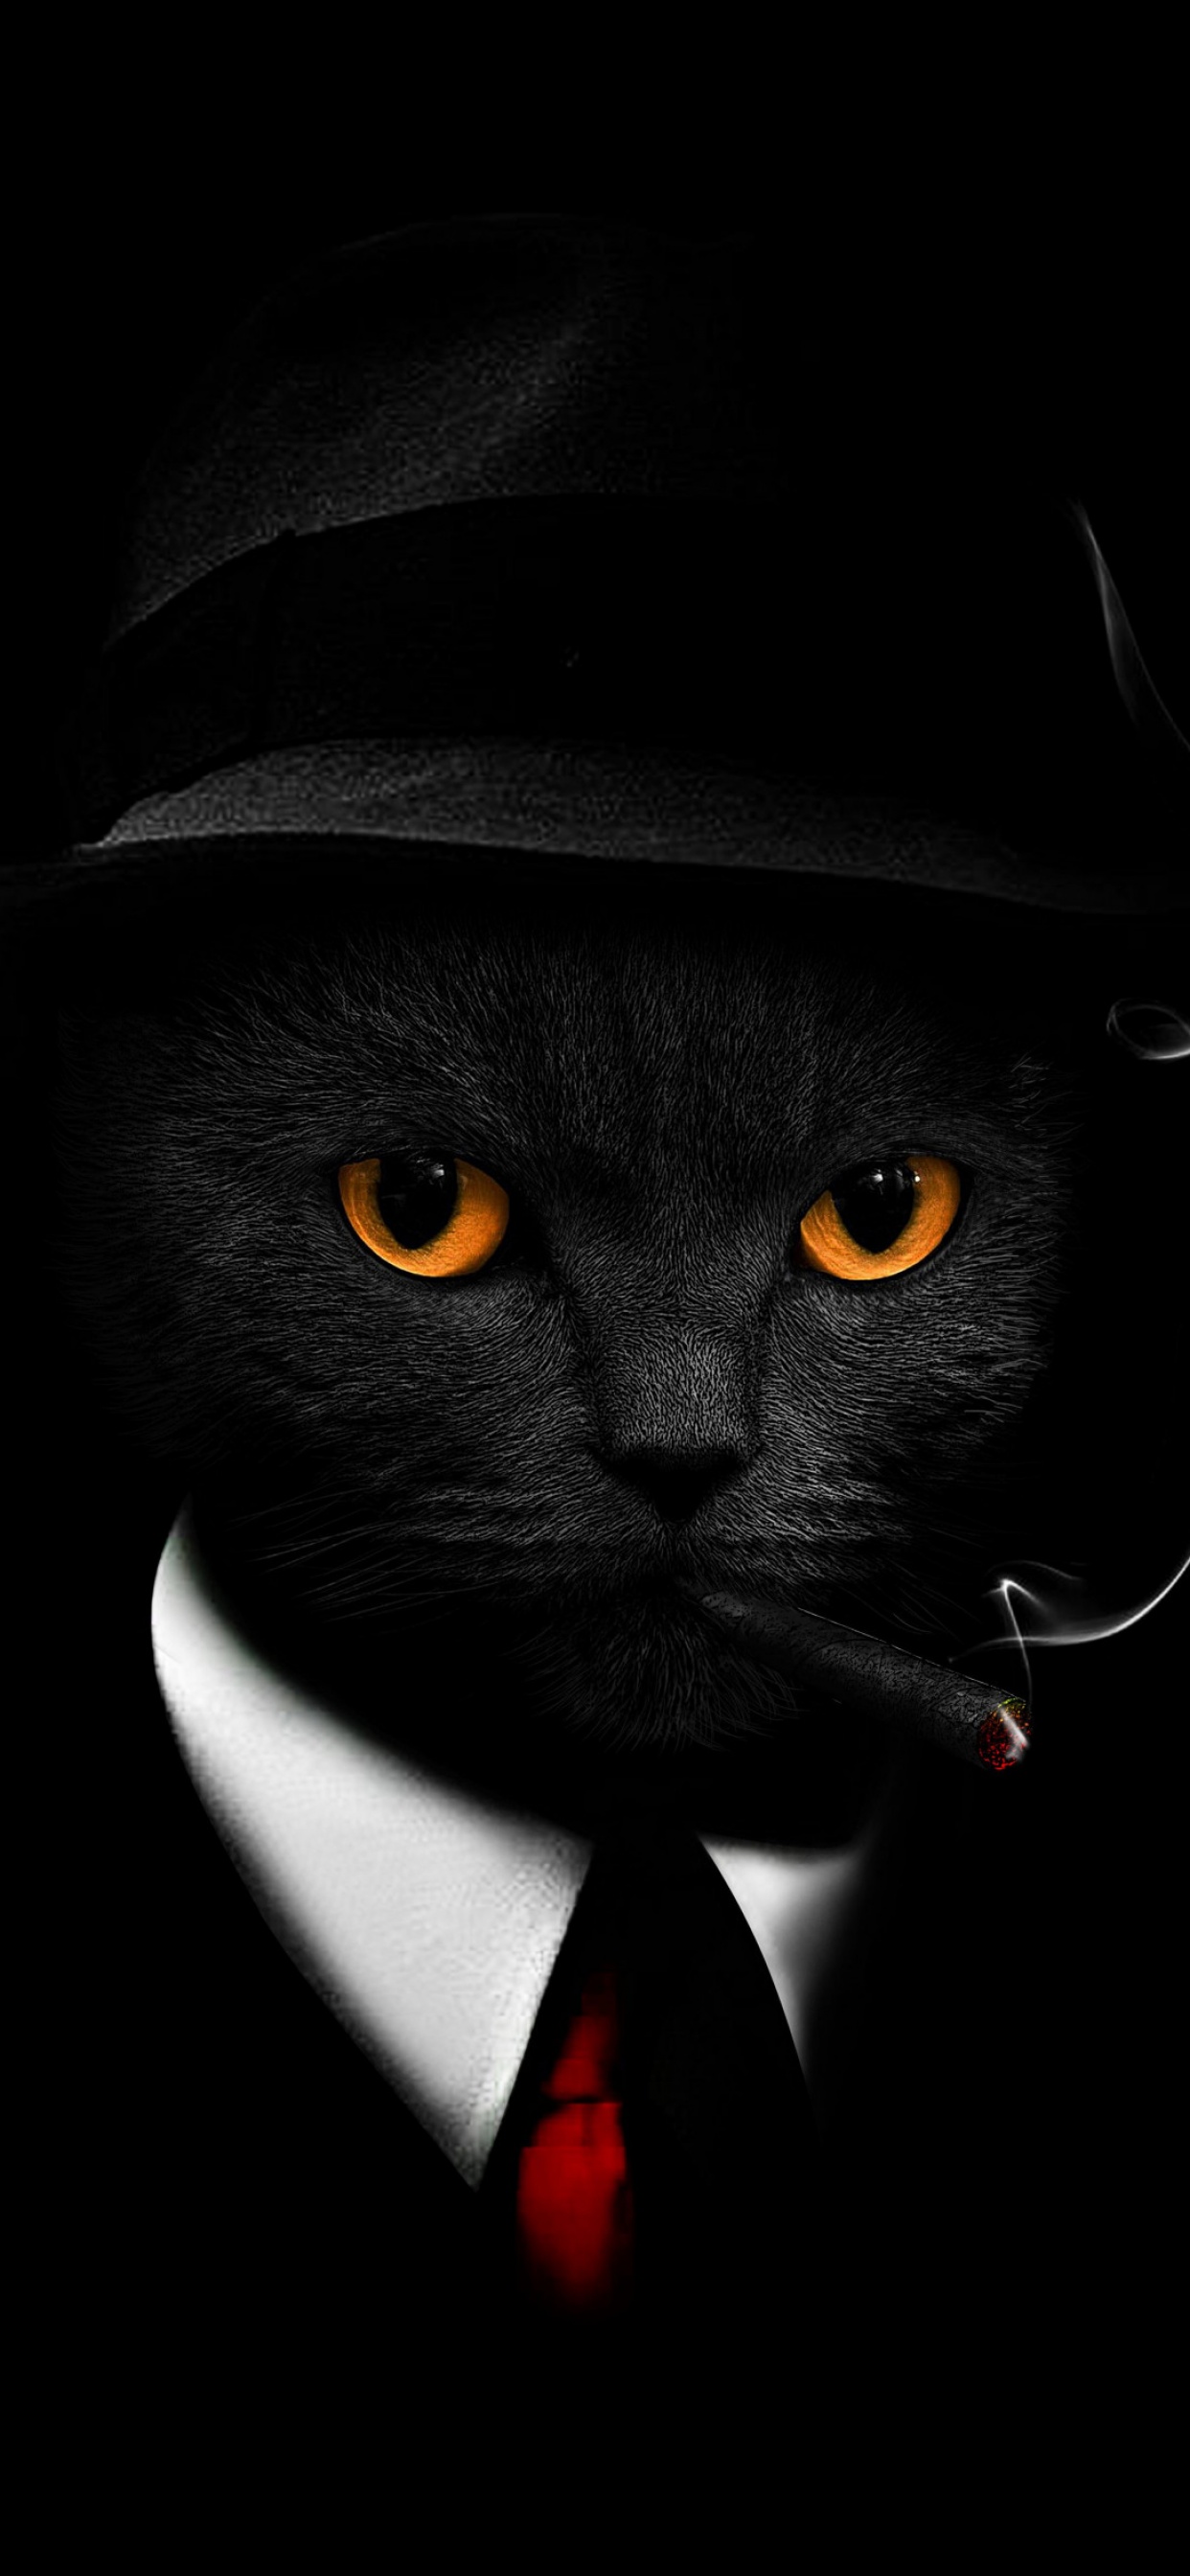 Download Incredible Black Cat Dark 4k Wallpaper | Wallpapers.com